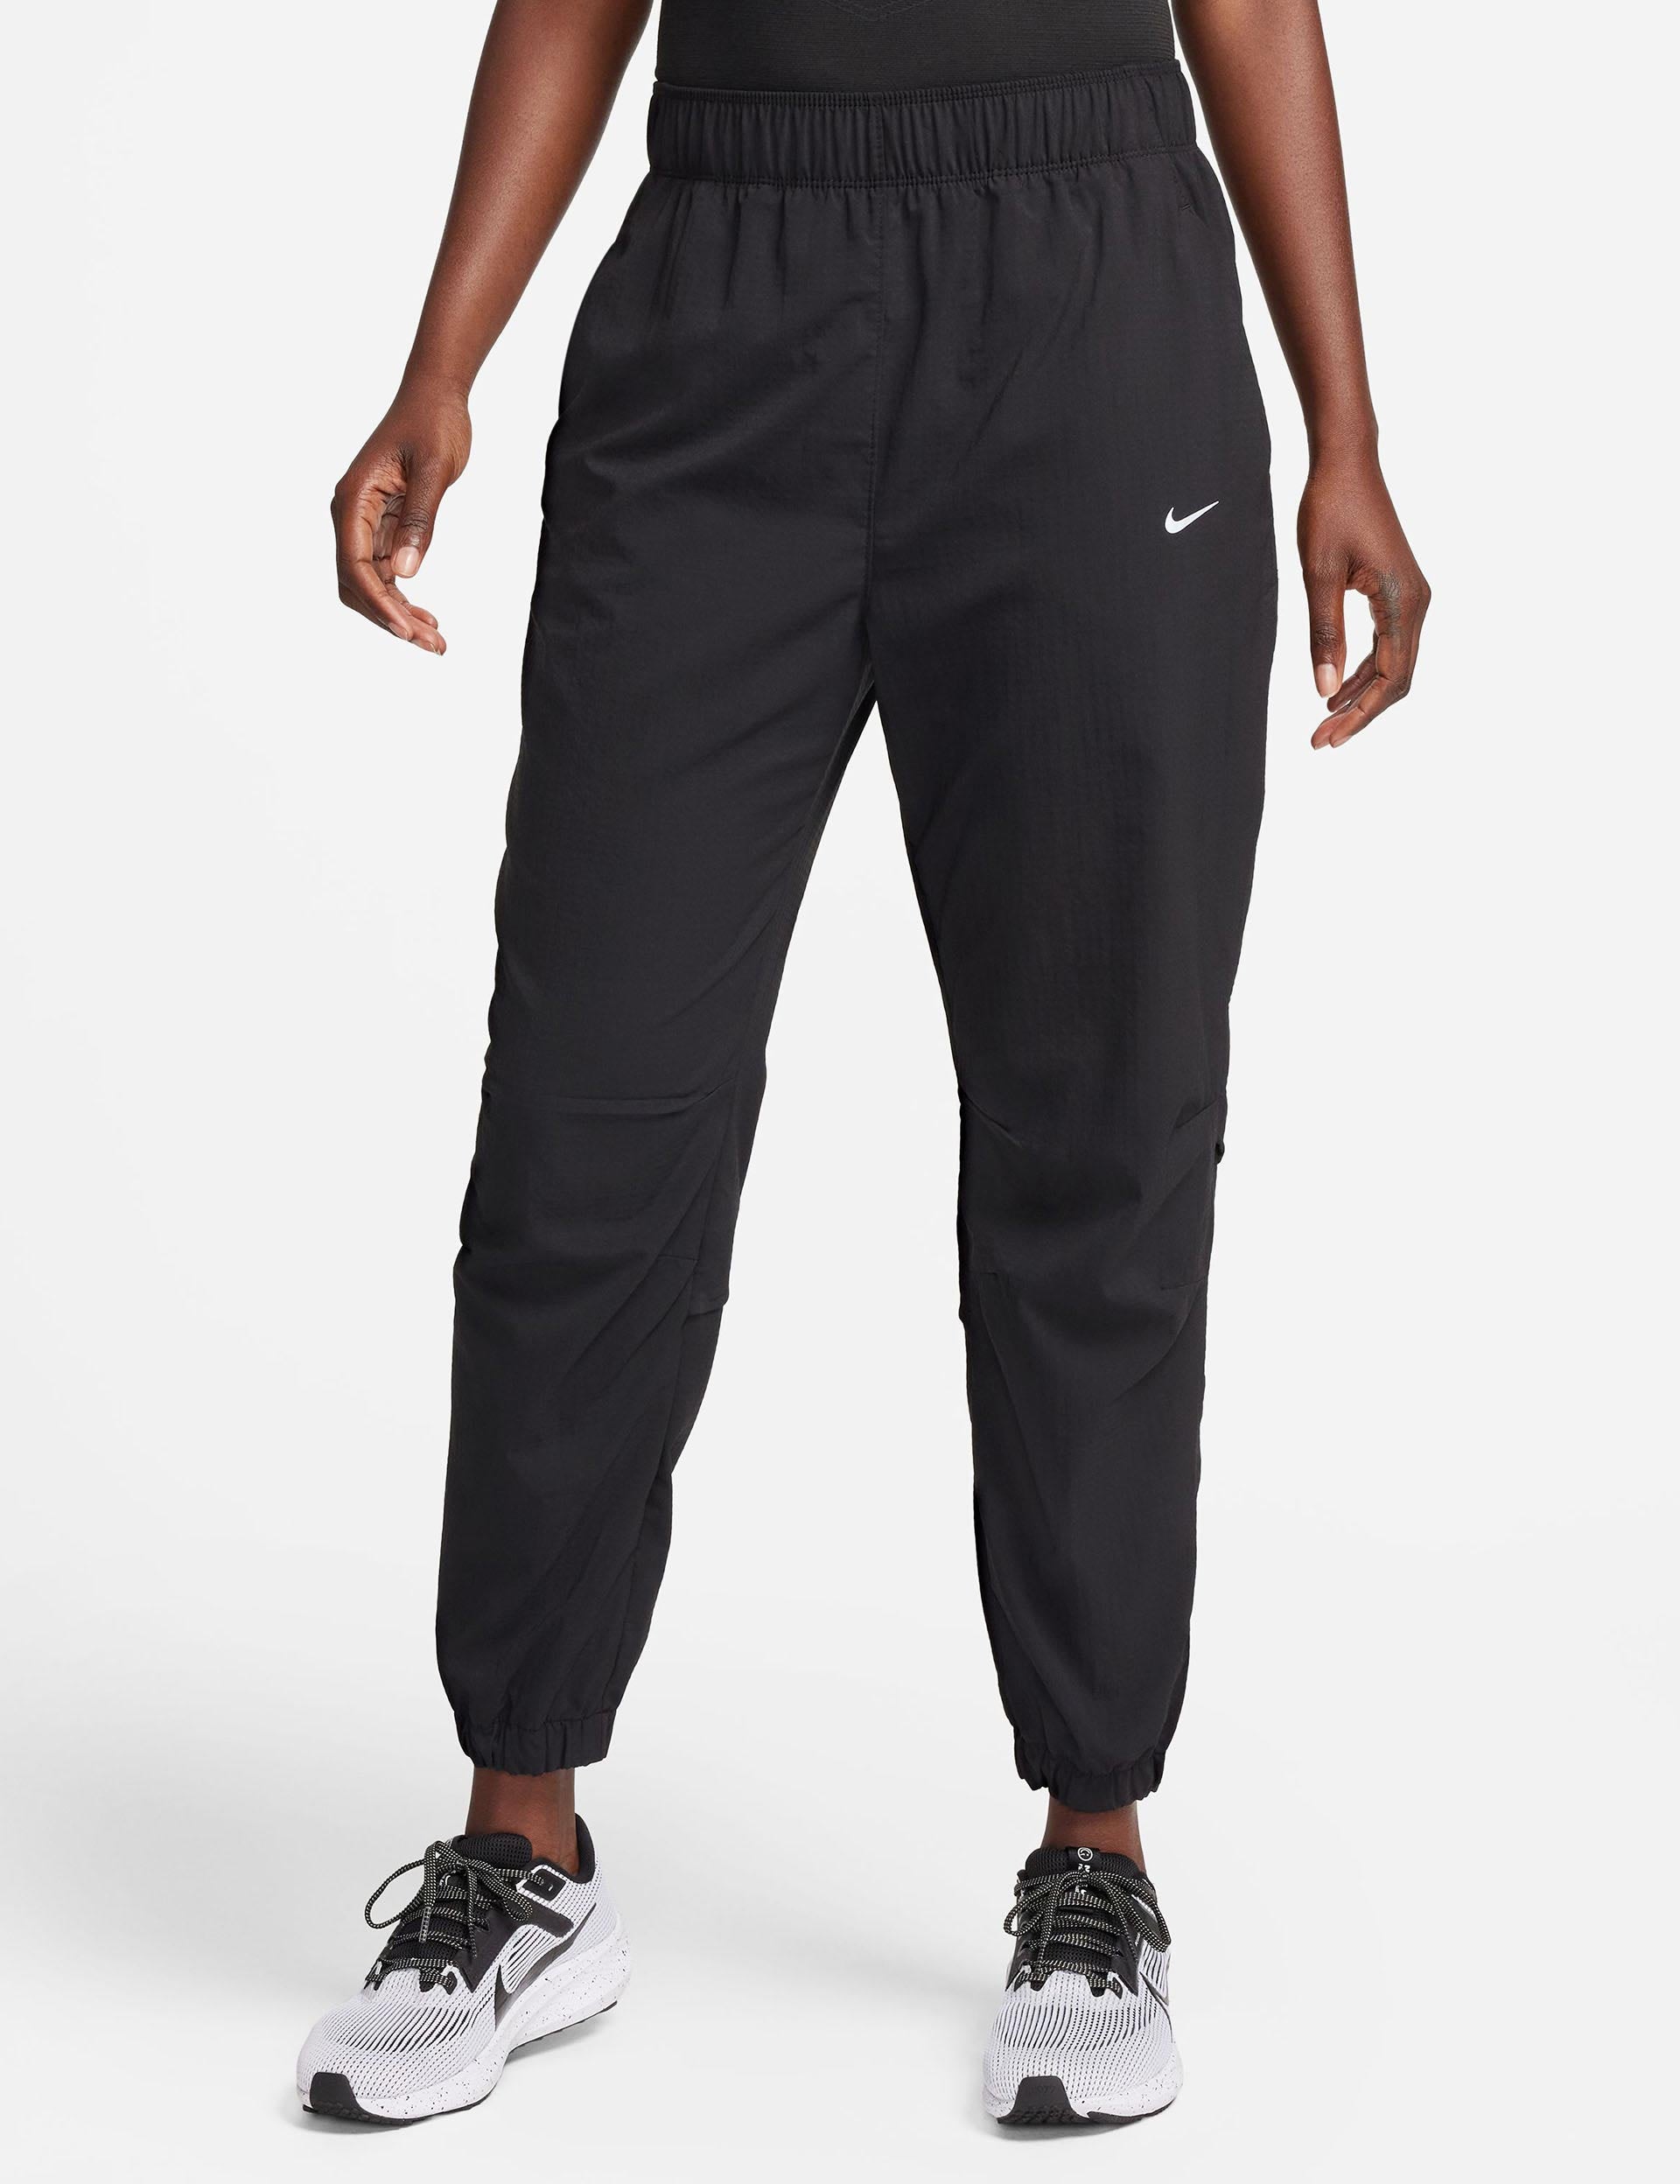 Nike 7/8 running pants DRI-FIT FAST